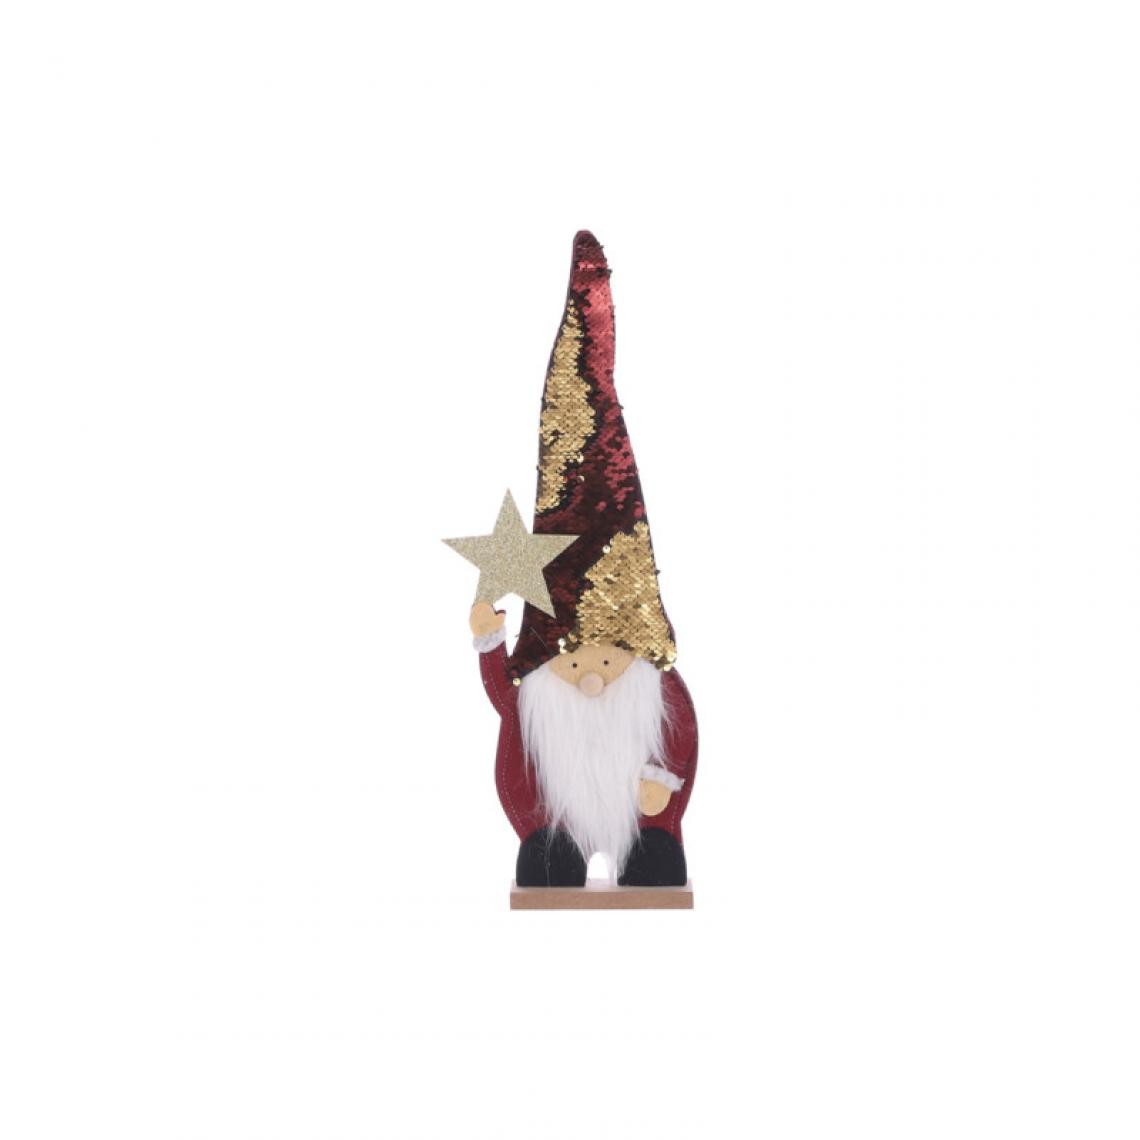 Edm - Figurine Père Noël EDM - esprit de Noël - 46 x 12 x 5 cm - 72174 - Décorations de Noël